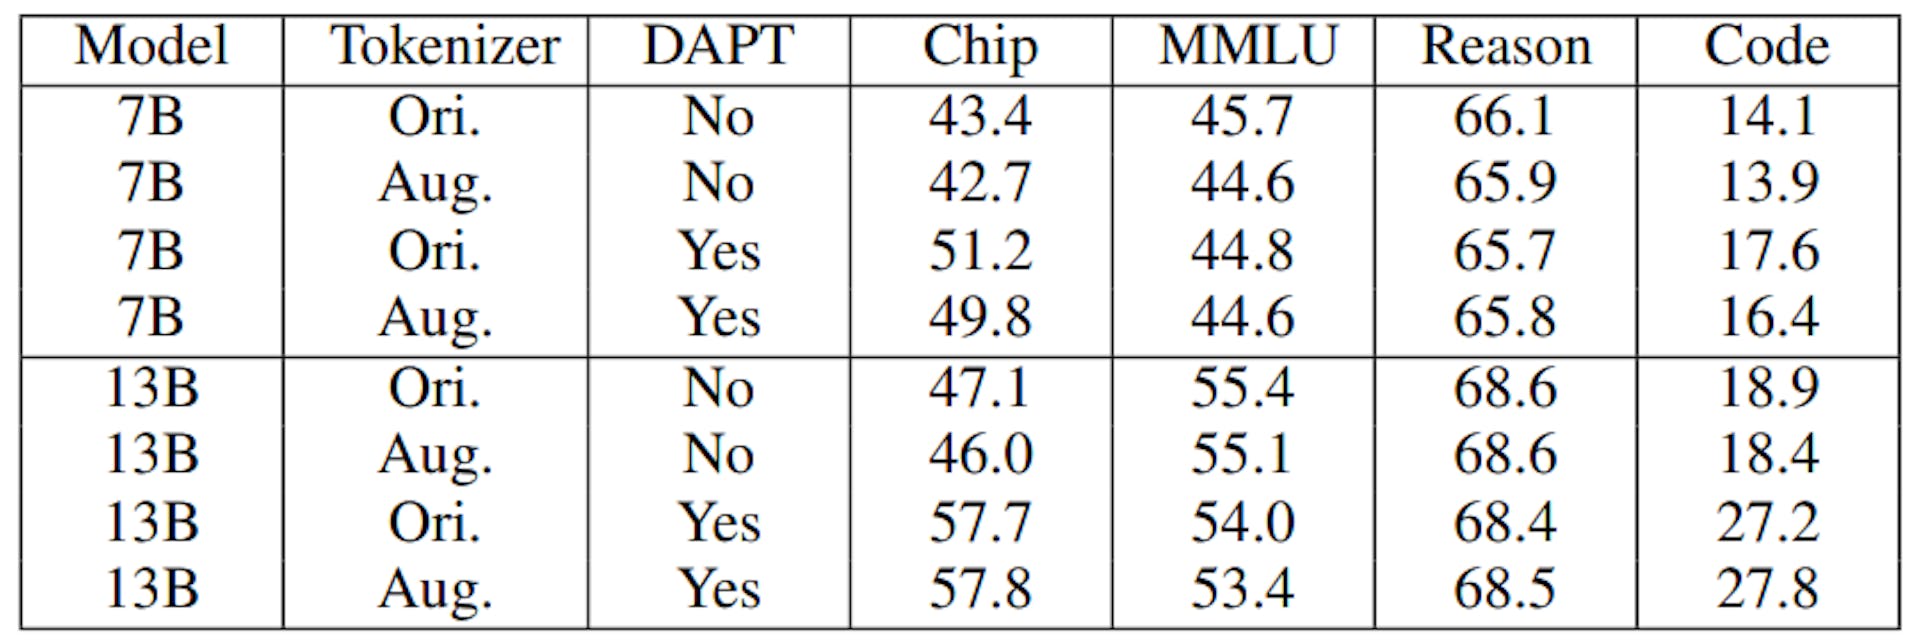 TABELA IX: Resultados da avaliação em modelos ChipNeMo com diferentes tokenizadores. Agosto indica tokenizer aumentado e Ori. indique o uso do tokenizer original LLaMA2. O uso do tokenizer aumentado sem DAPT corresponde à inicialização do modelo como na Seção III-A.